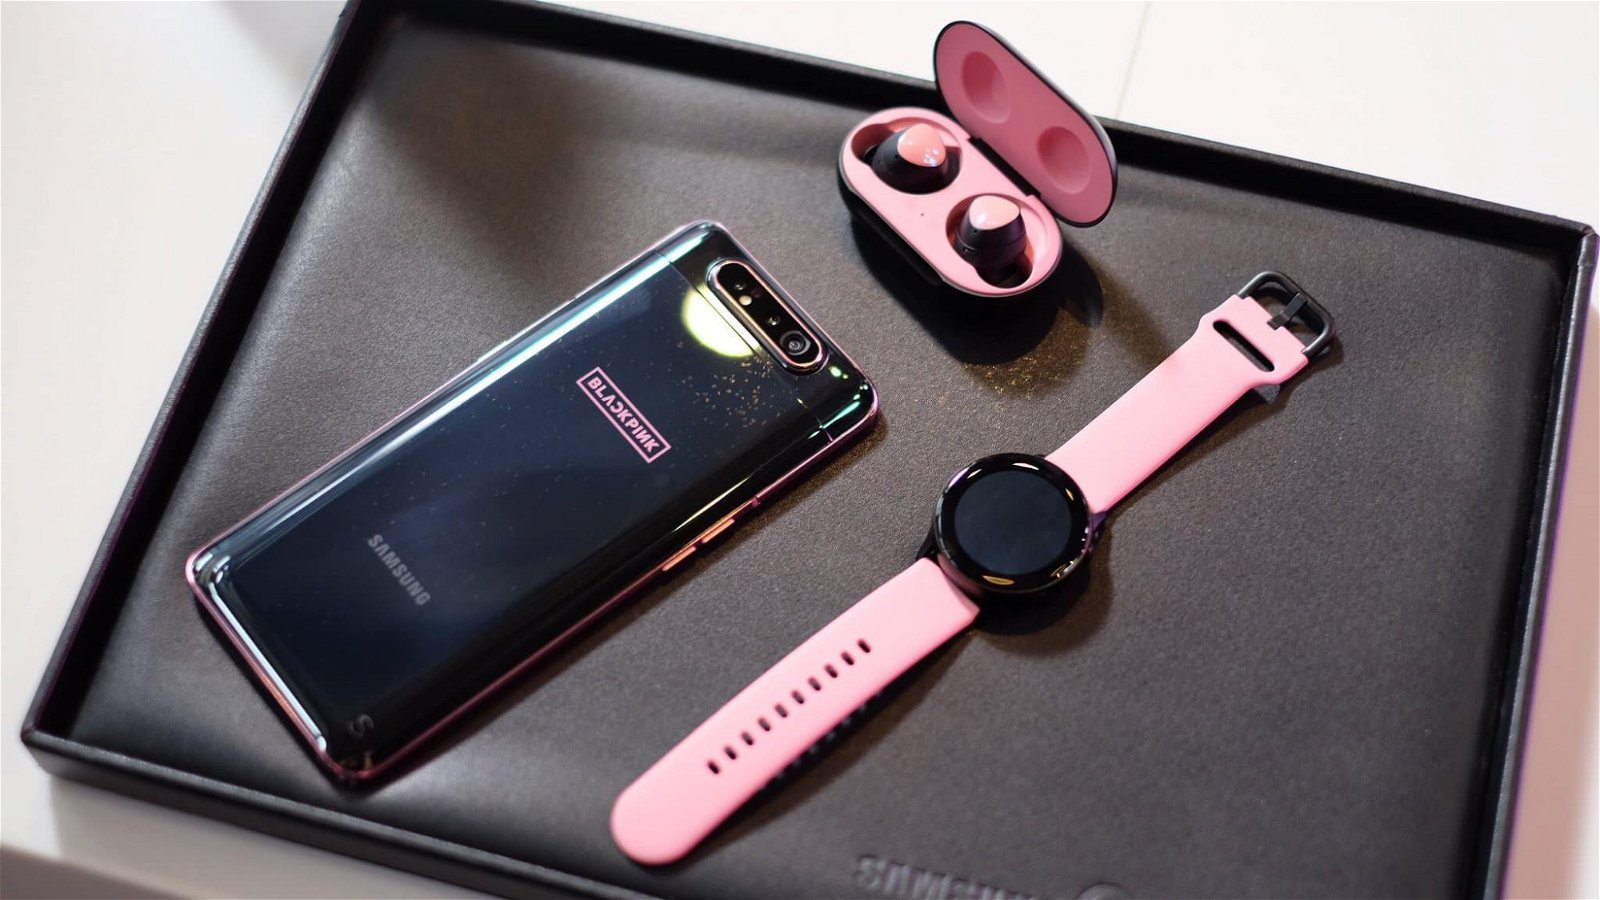 phiên bản giới hạn này còn có một chiếc Galaxy Watch Active màu hồng, chiếc Galaxy Buds màu đen kết hợp hồng